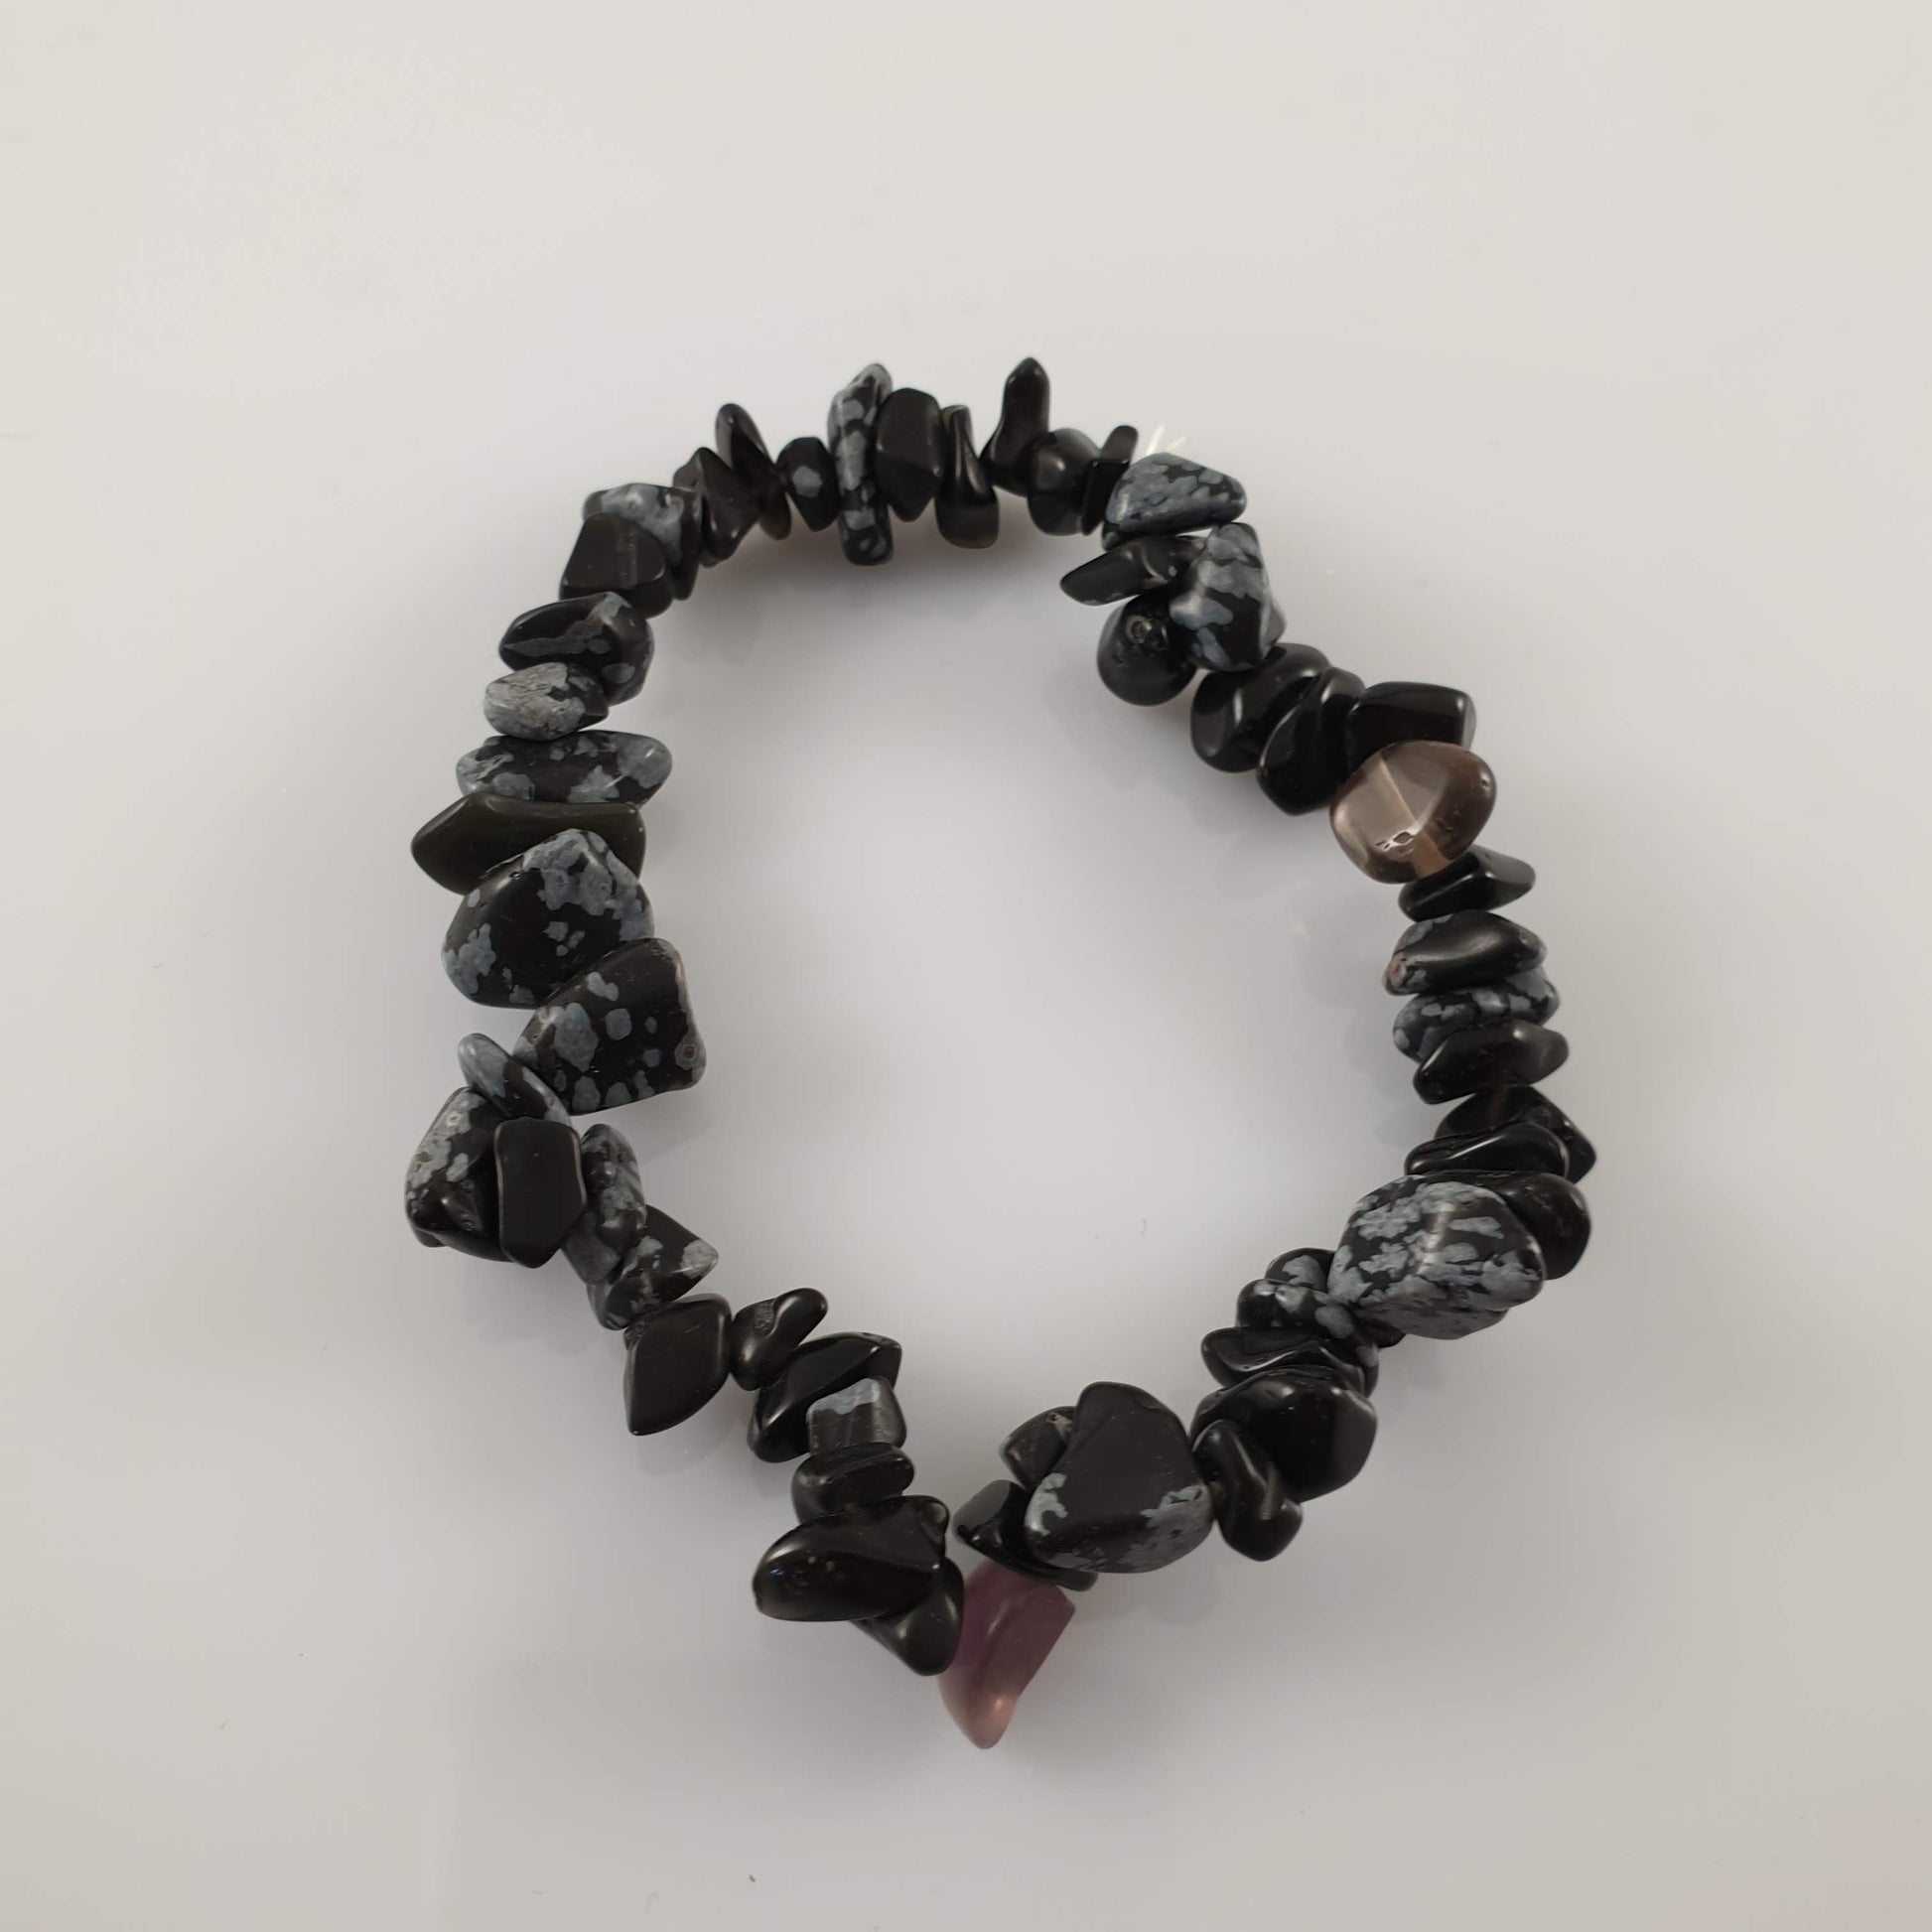 Snowflake Obsidian Chip Crystal Bracelet - Rivendell Shop